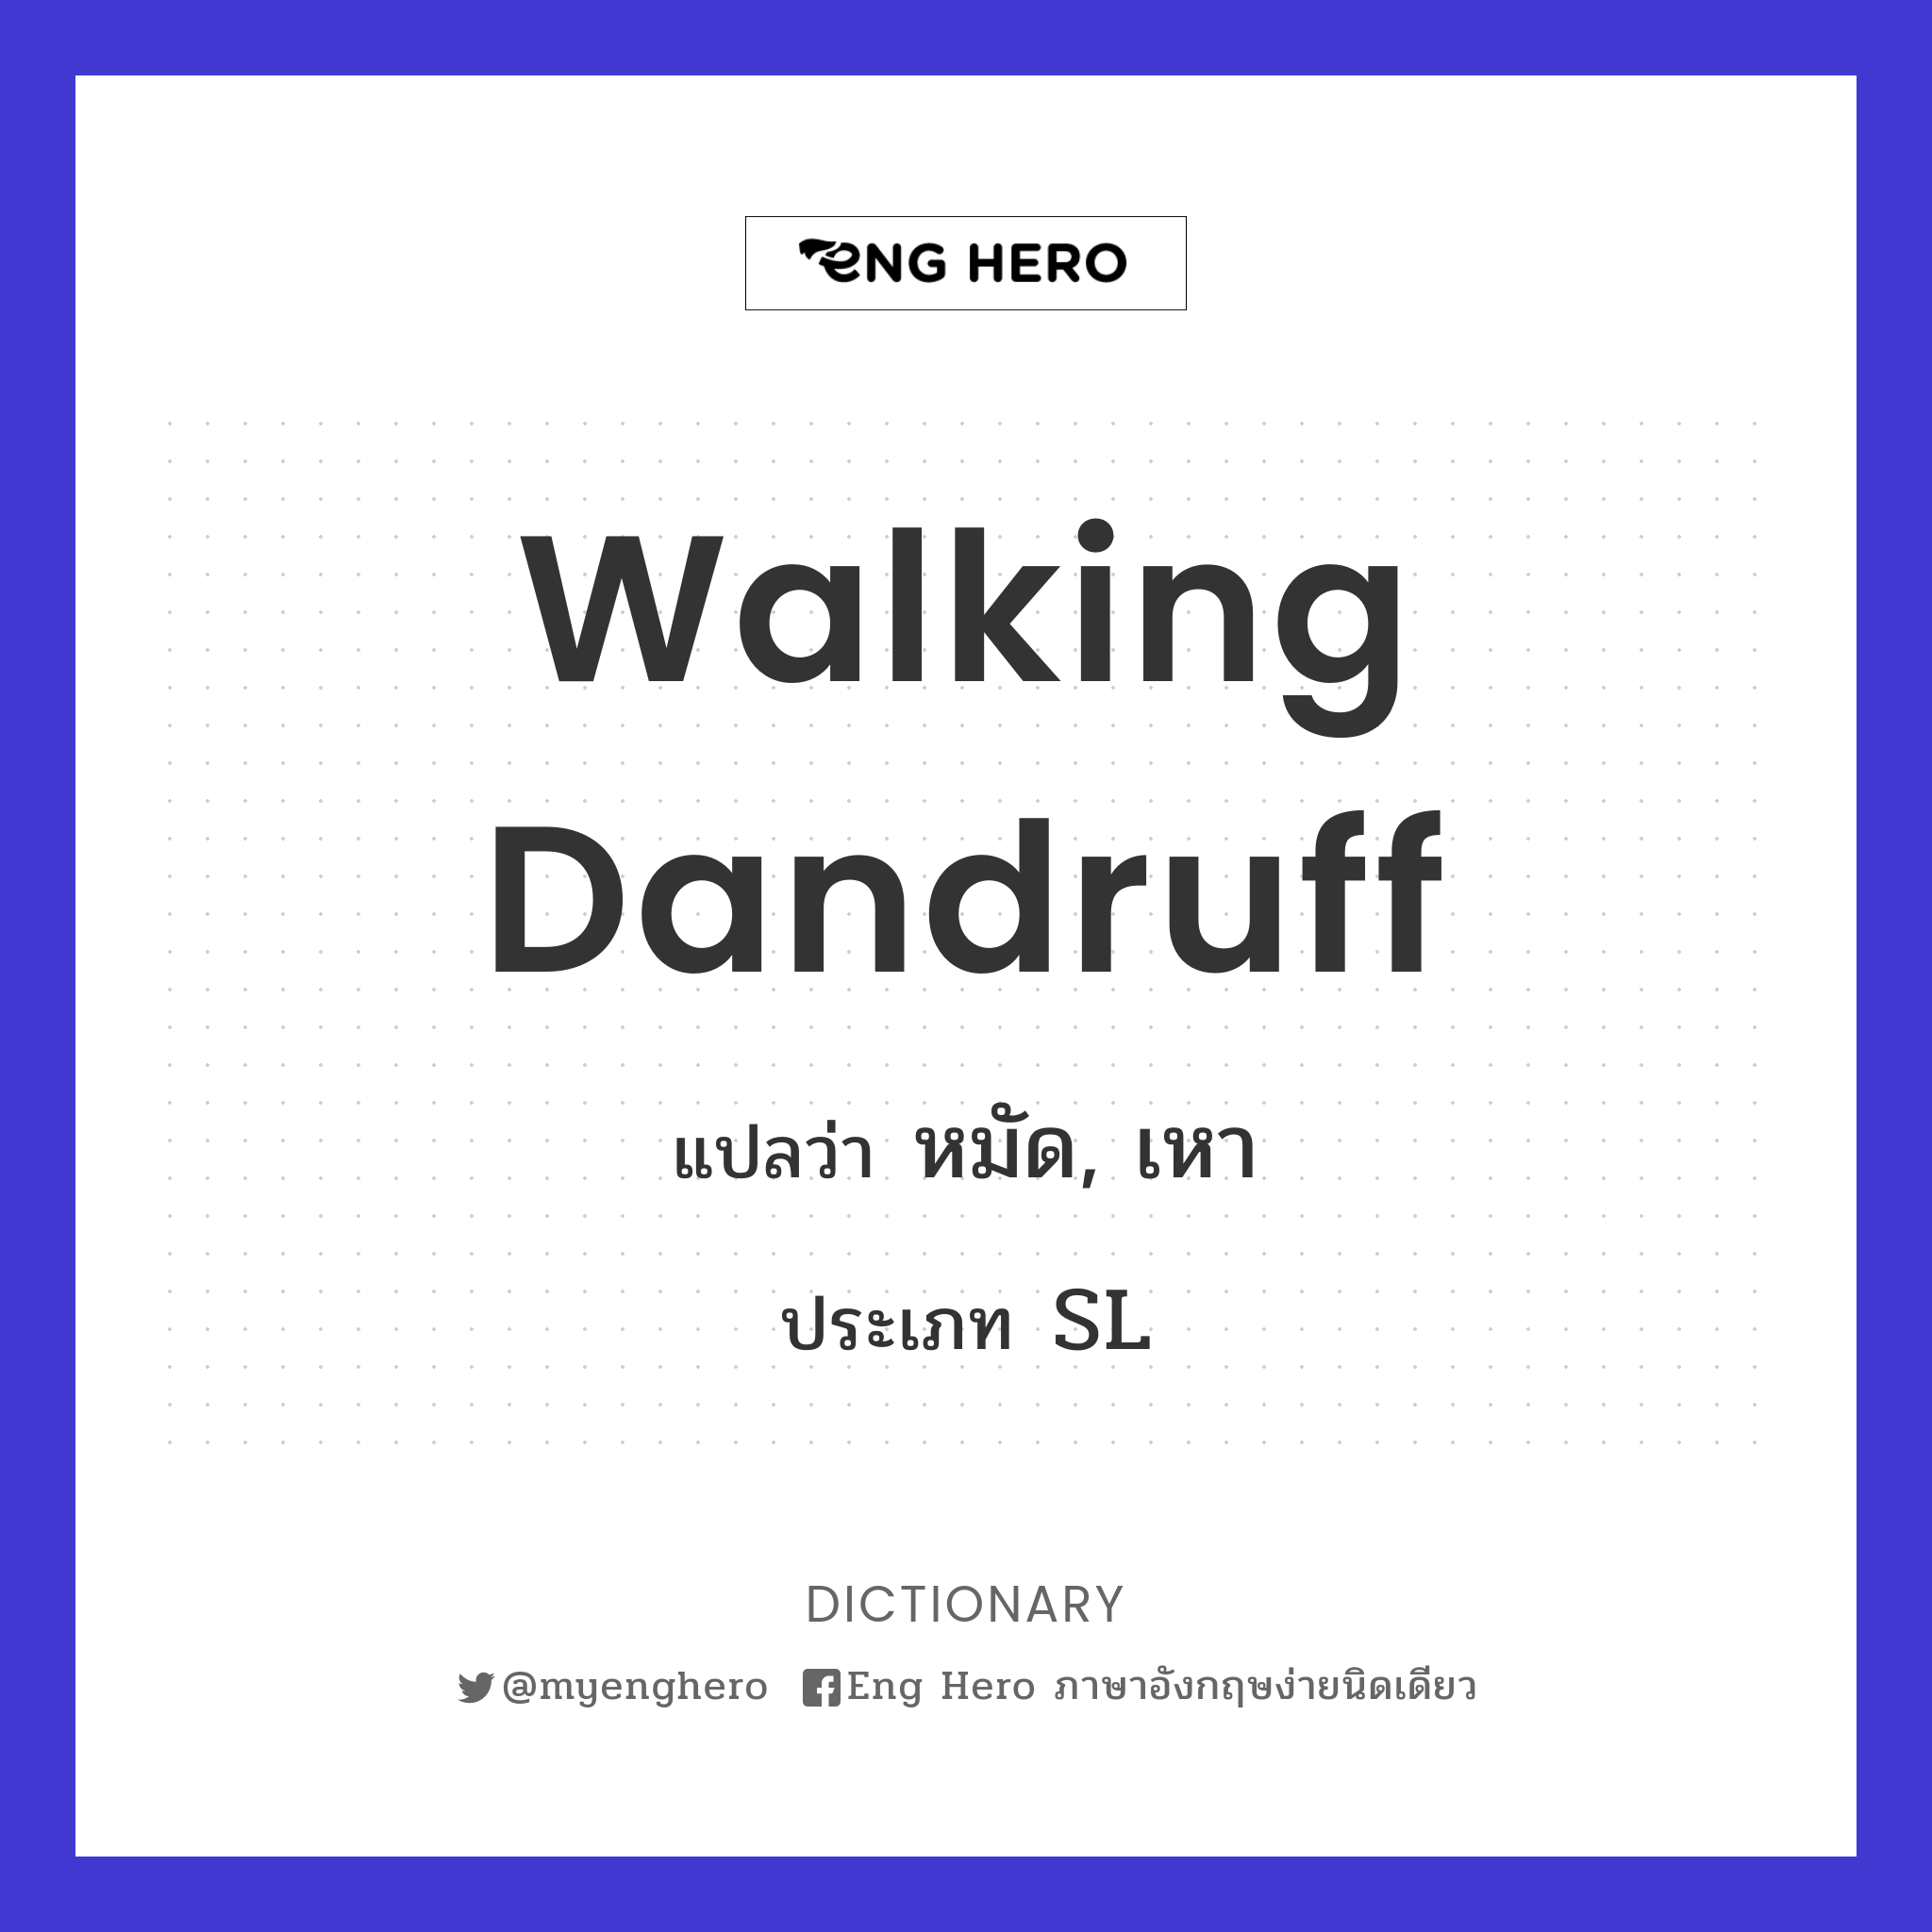 walking dandruff